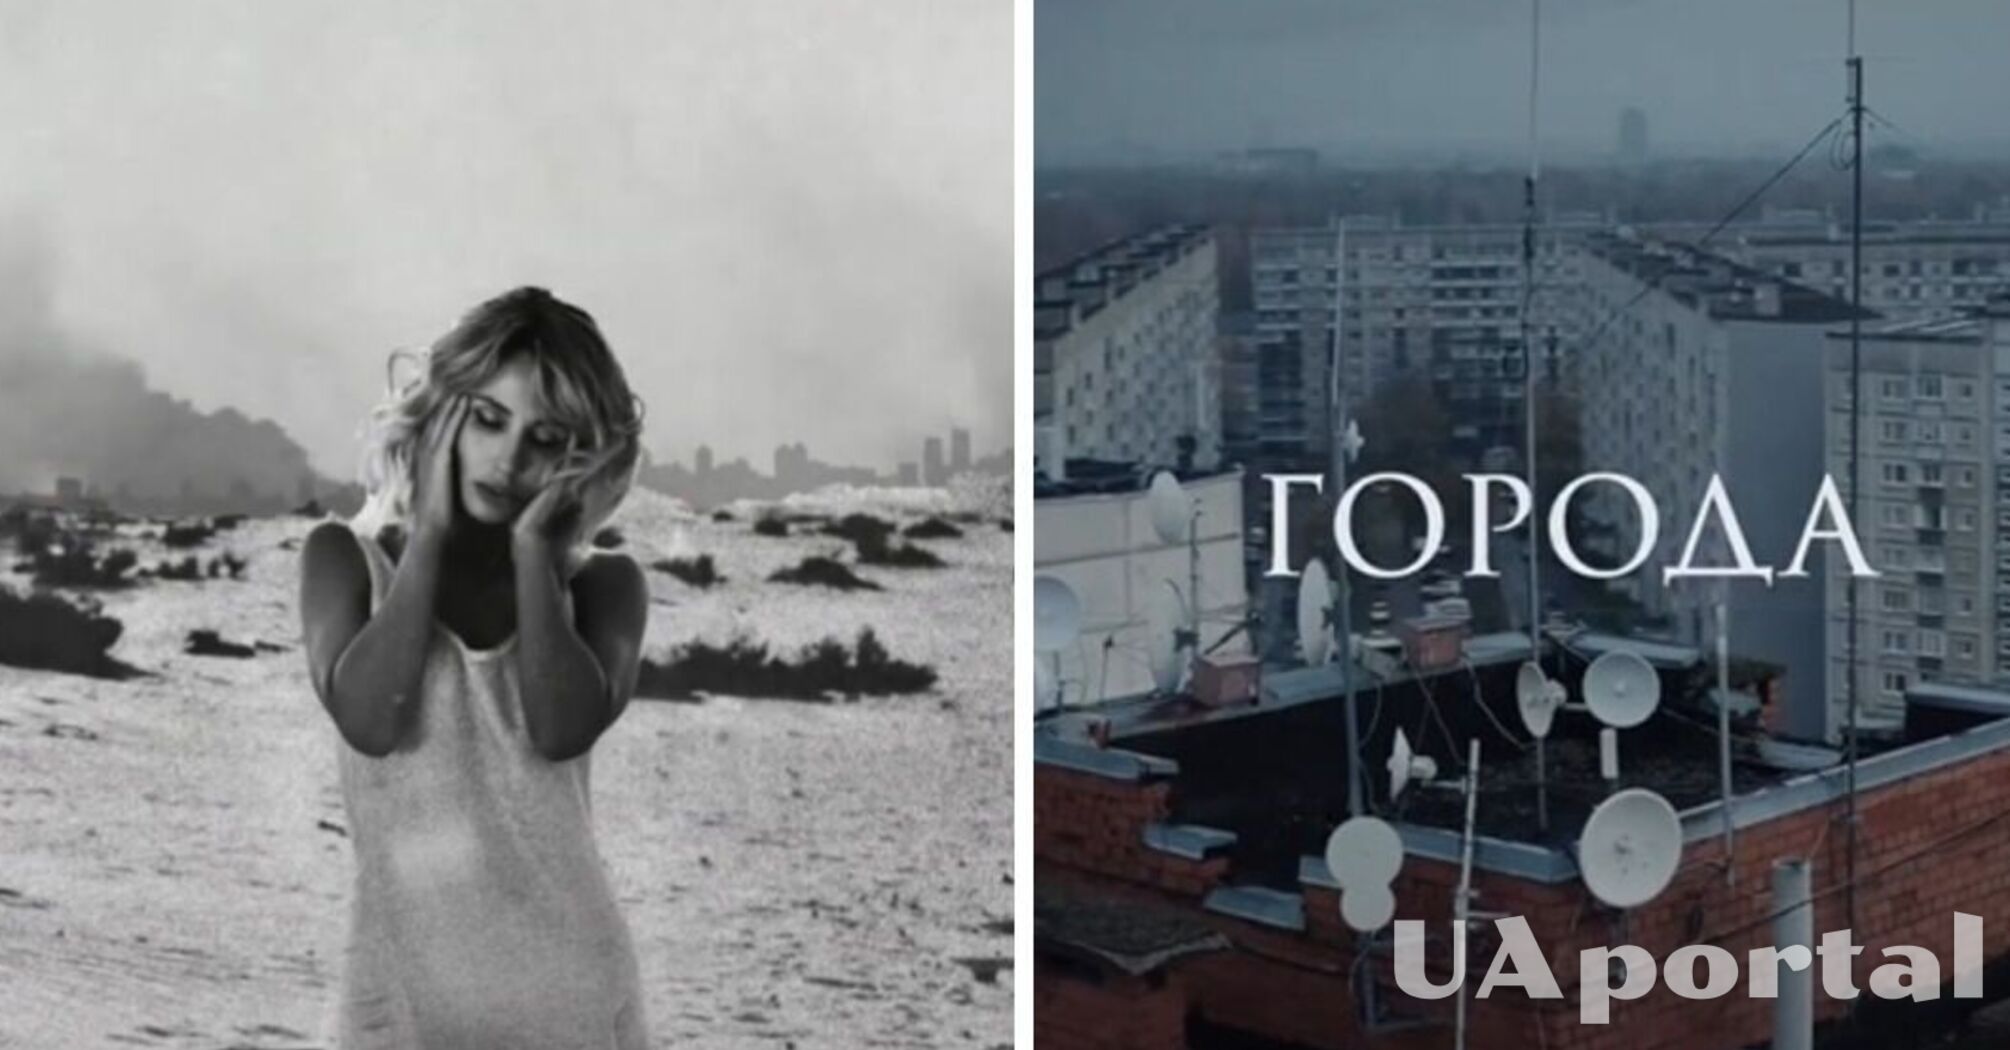 Loboda вернулась к русскоязычному творчеству и выпустила новую песню 'Города'